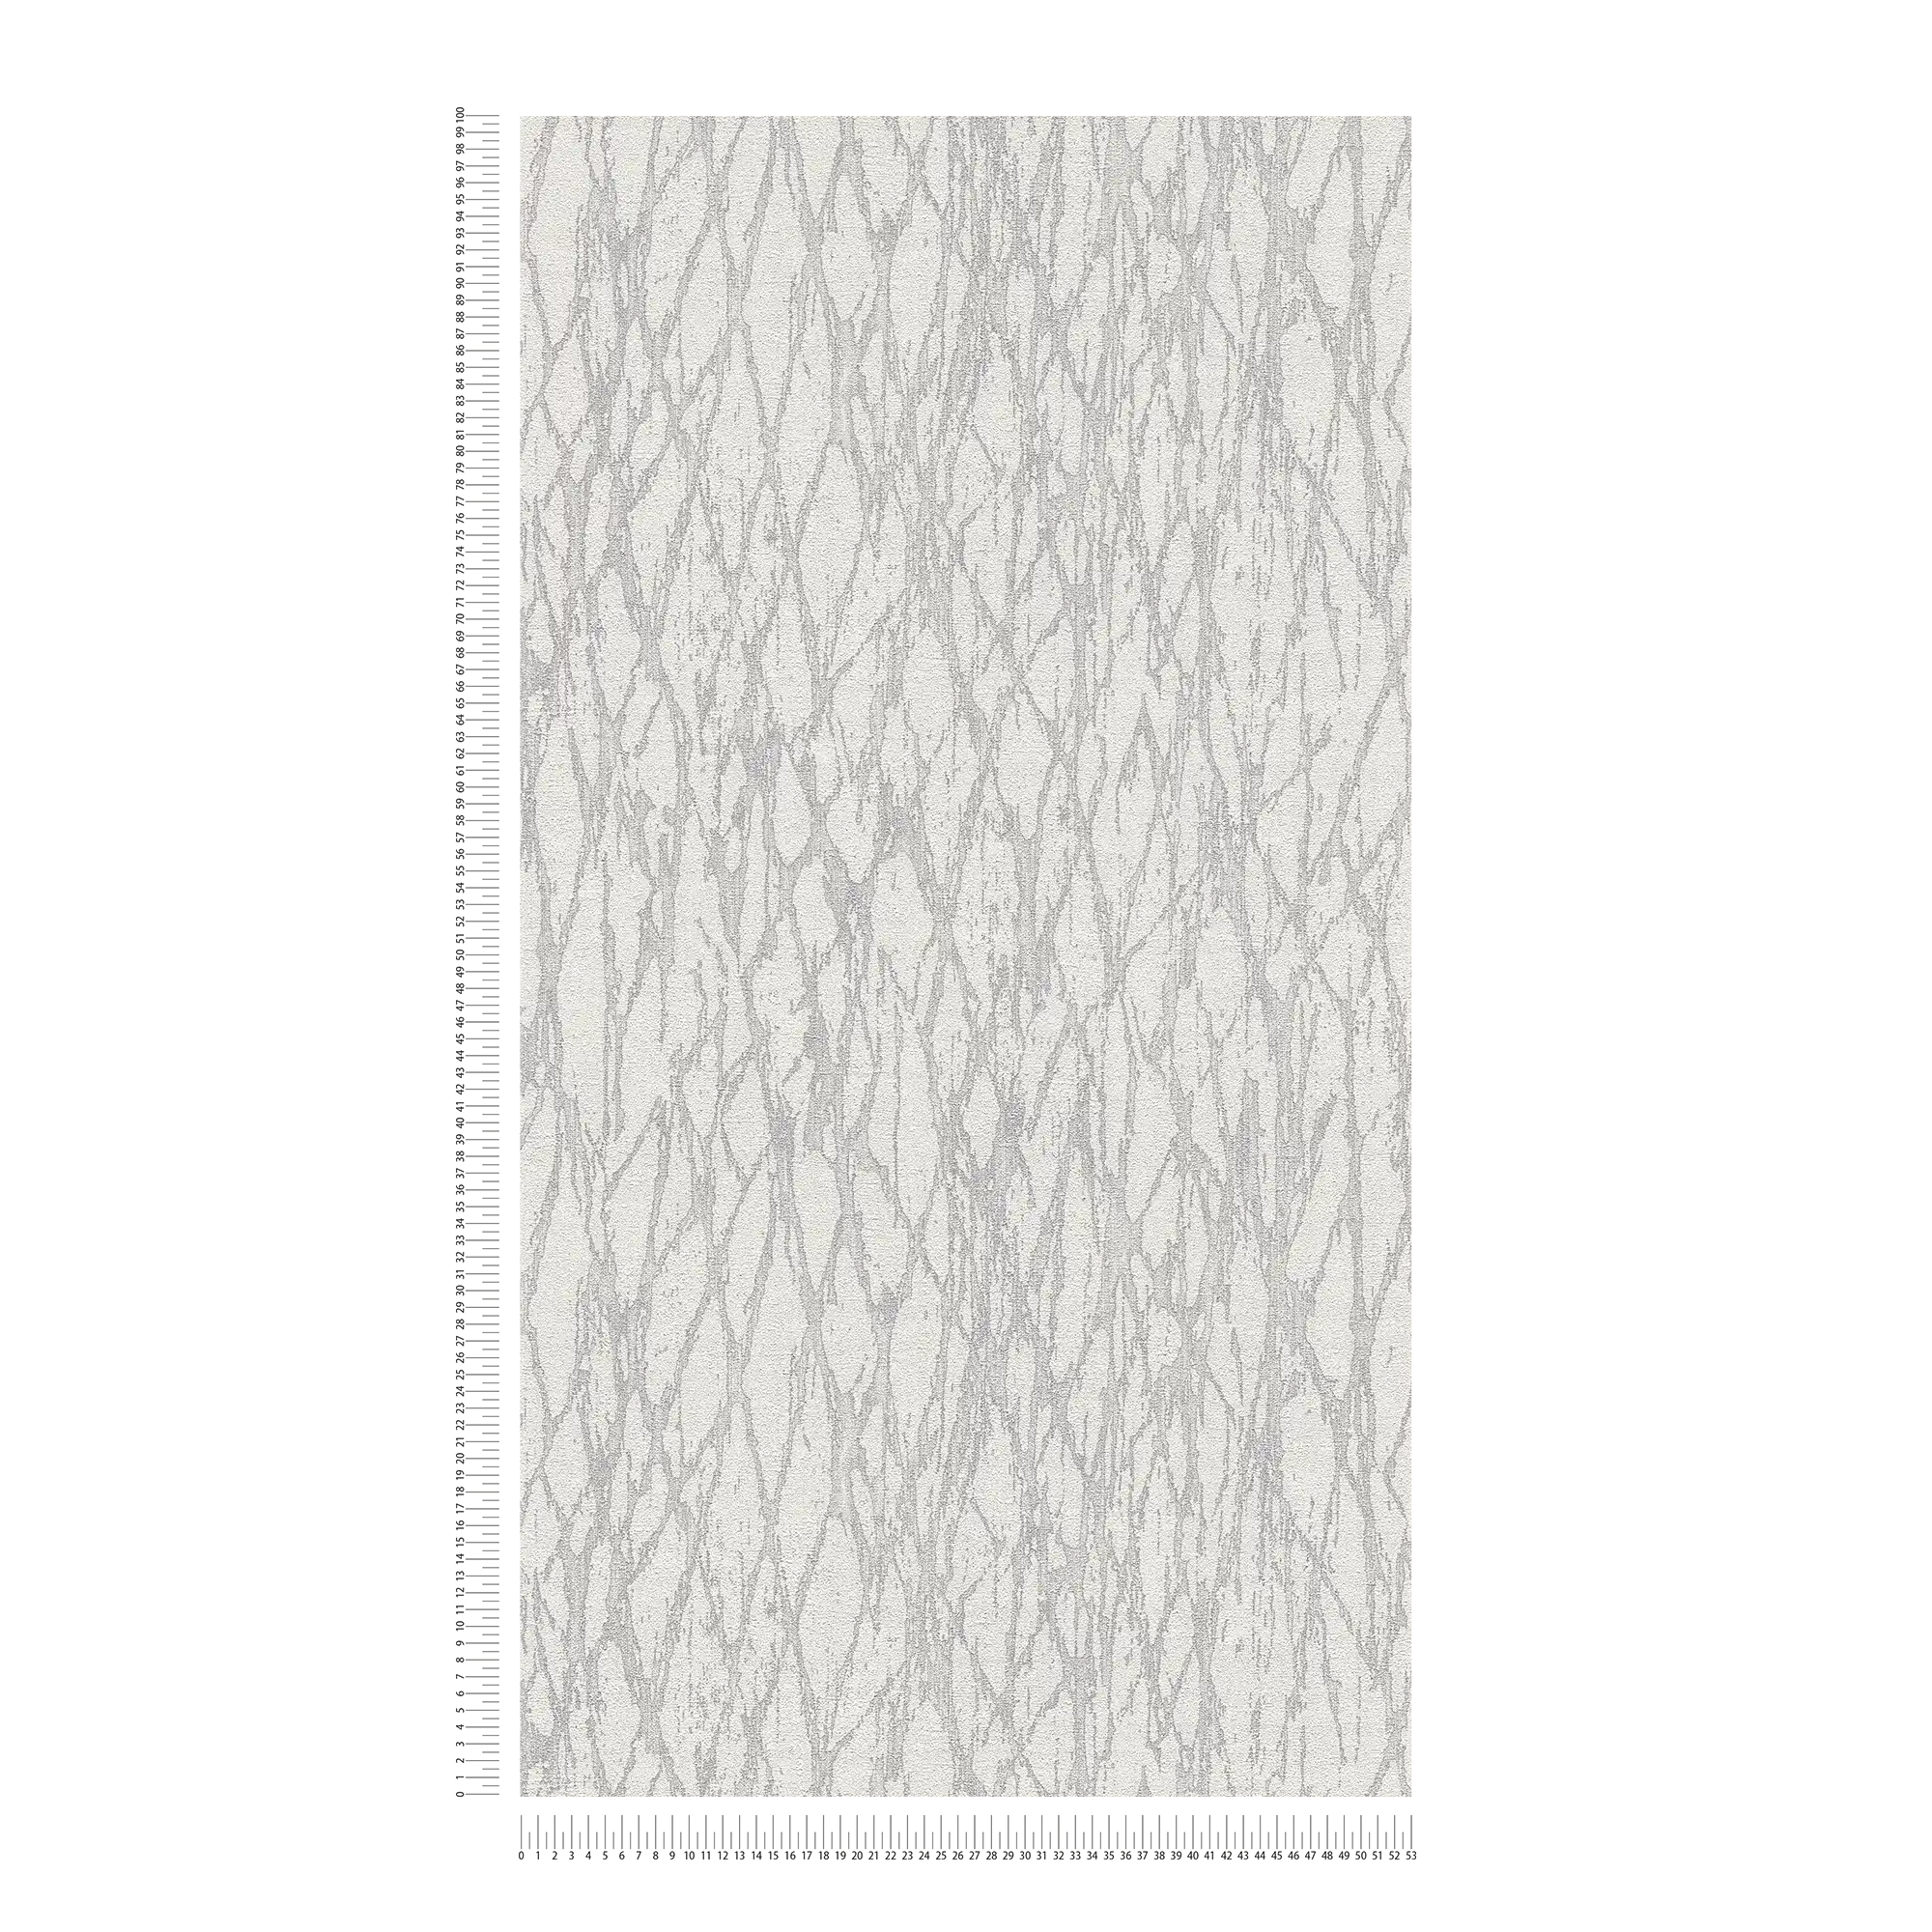             papier peint en papier intissé avec motif de lignes abstraites légèrement brillant - blanc, gris, argenté
        